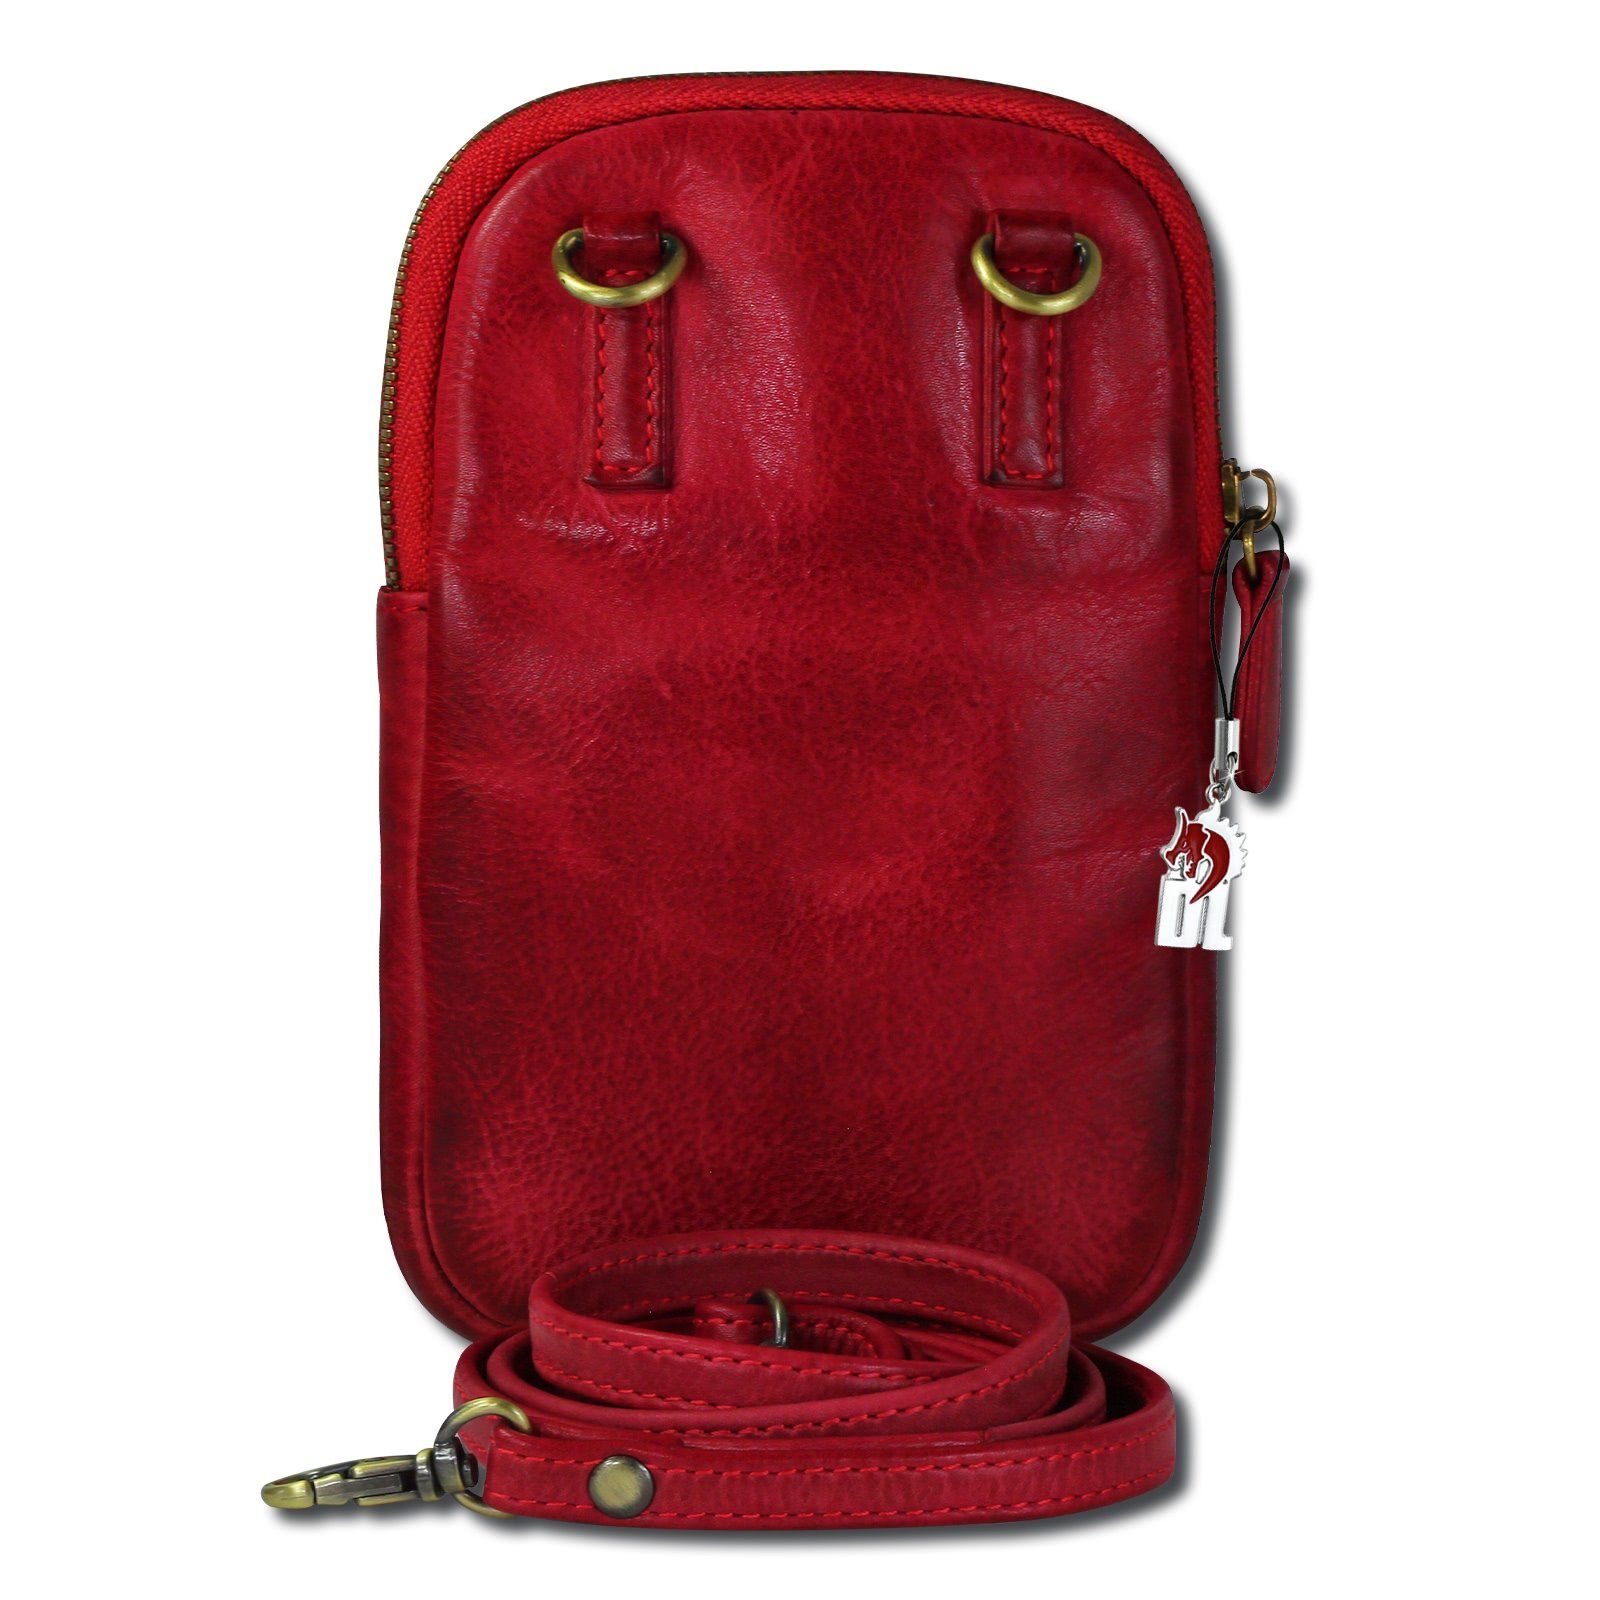 DrachenLeder Handtasche DrachenLeder Herren rot ca. (Handtasche), Damen Damen, 13cm Tasche Tasche aus Echtleder in rot, Breite Handtasche